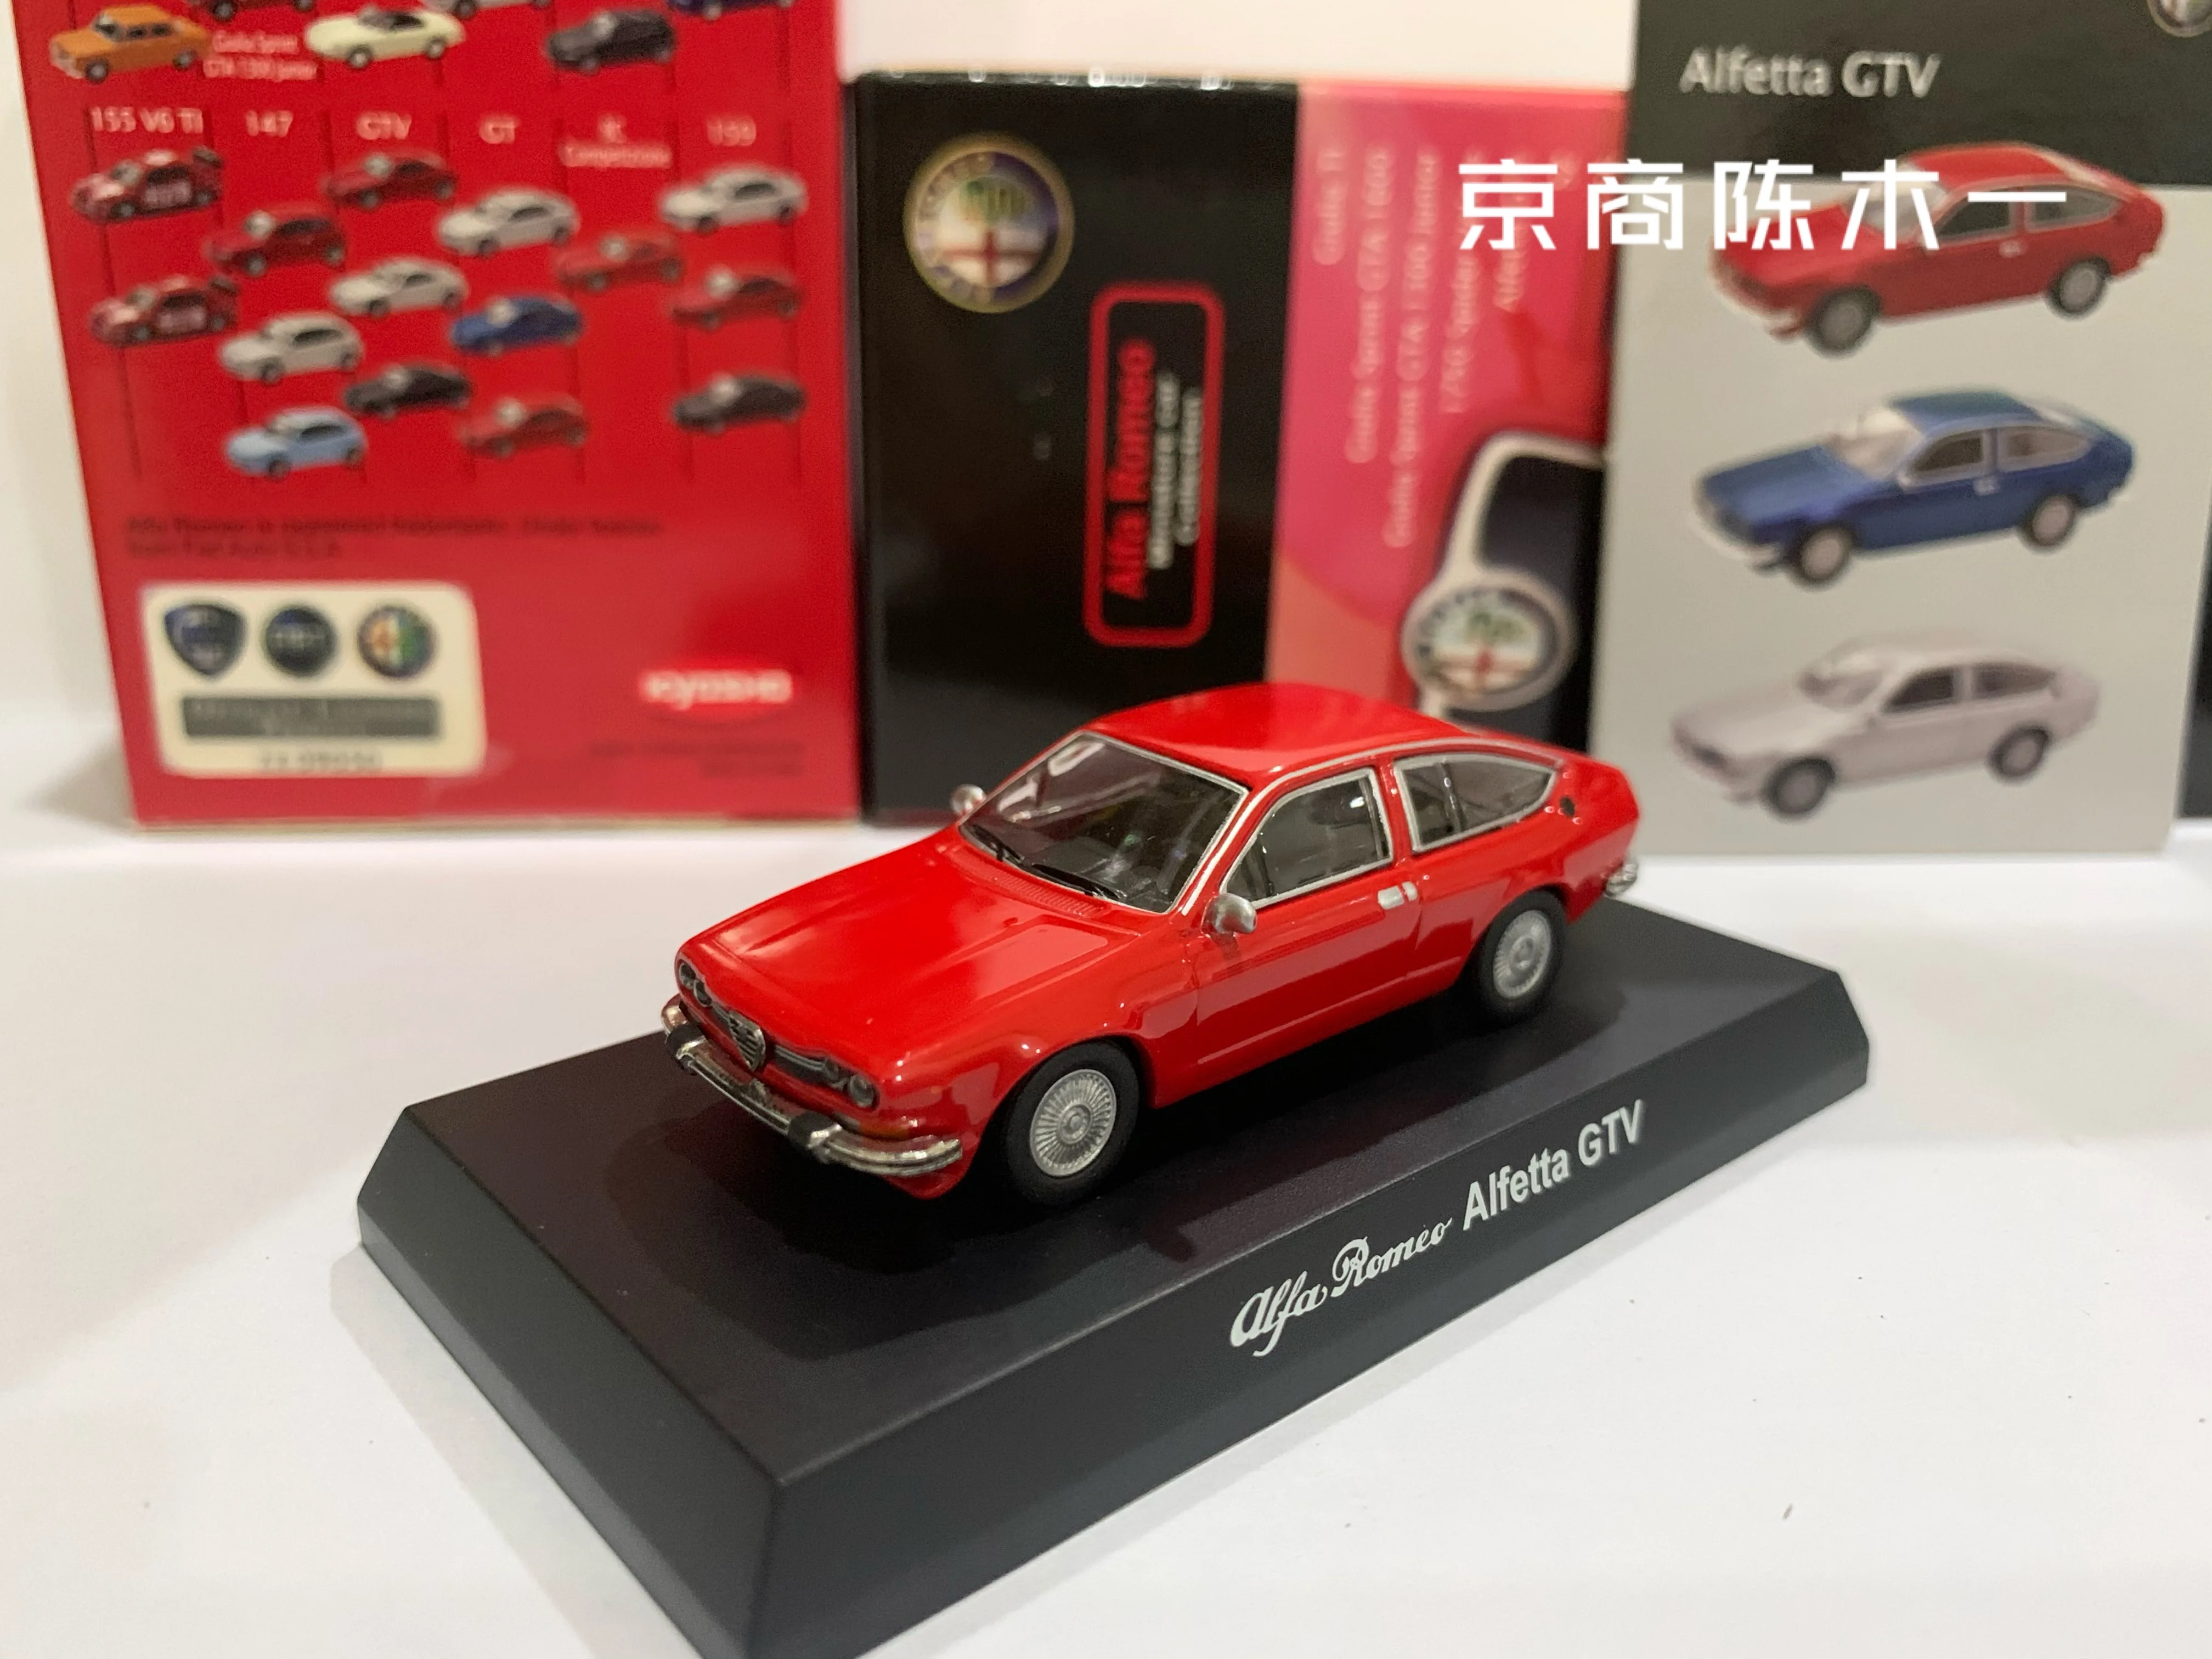 مجموعة كيوشو ألفا روميو ألفيتا GTV لعام 1/64 من ألعاب نماذج تزيين السيارات المصنوعة من سبيكة الصب